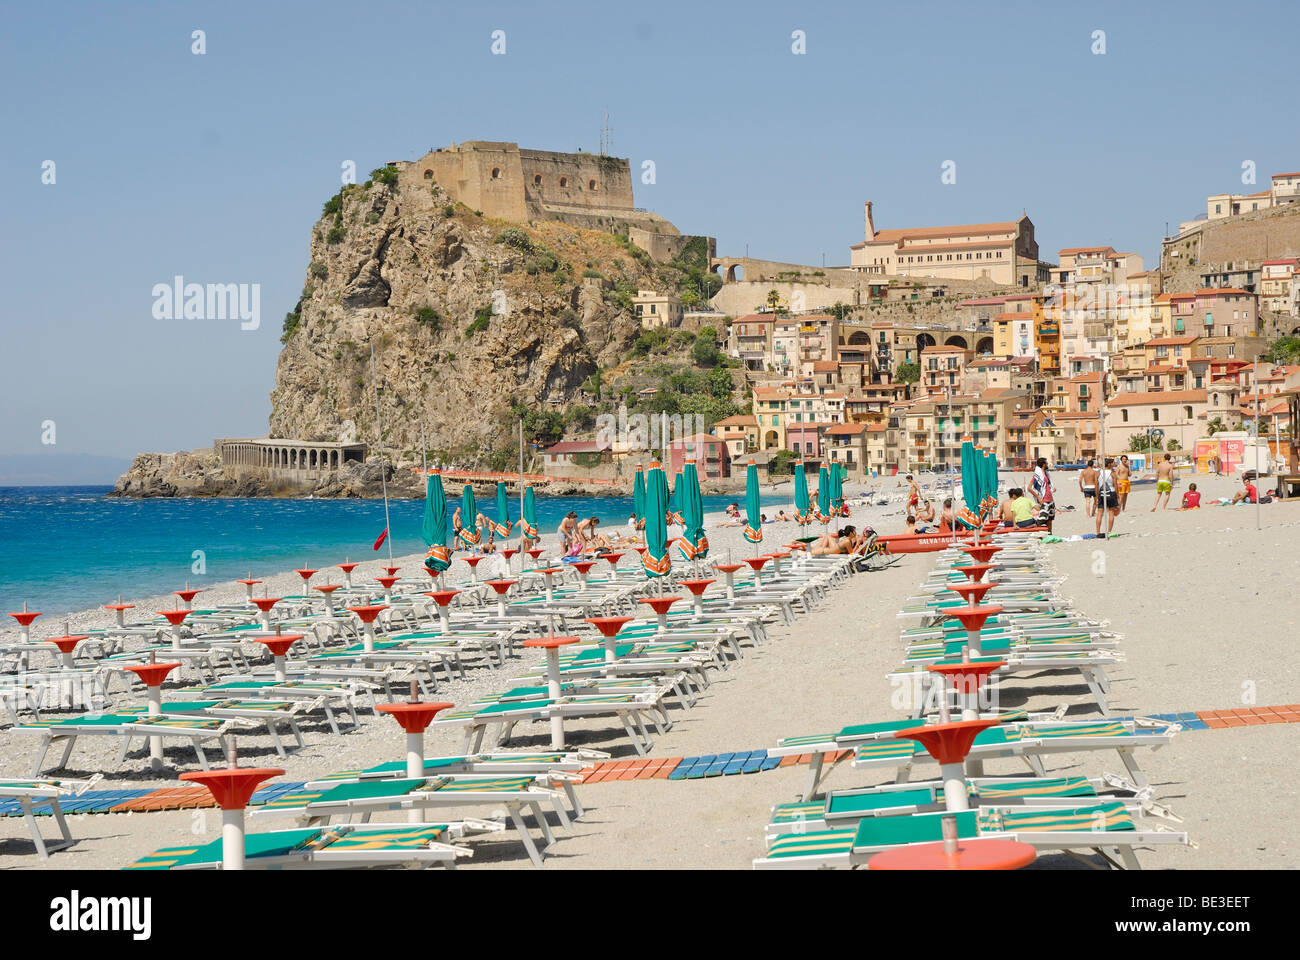 Sedie a sdraio sulla spiaggia, la città vecchia con il castello nel retro, sulla ripida scogliera costiera, Mar Tirreno, Scilla, Calabria, Sud Italia Foto Stock